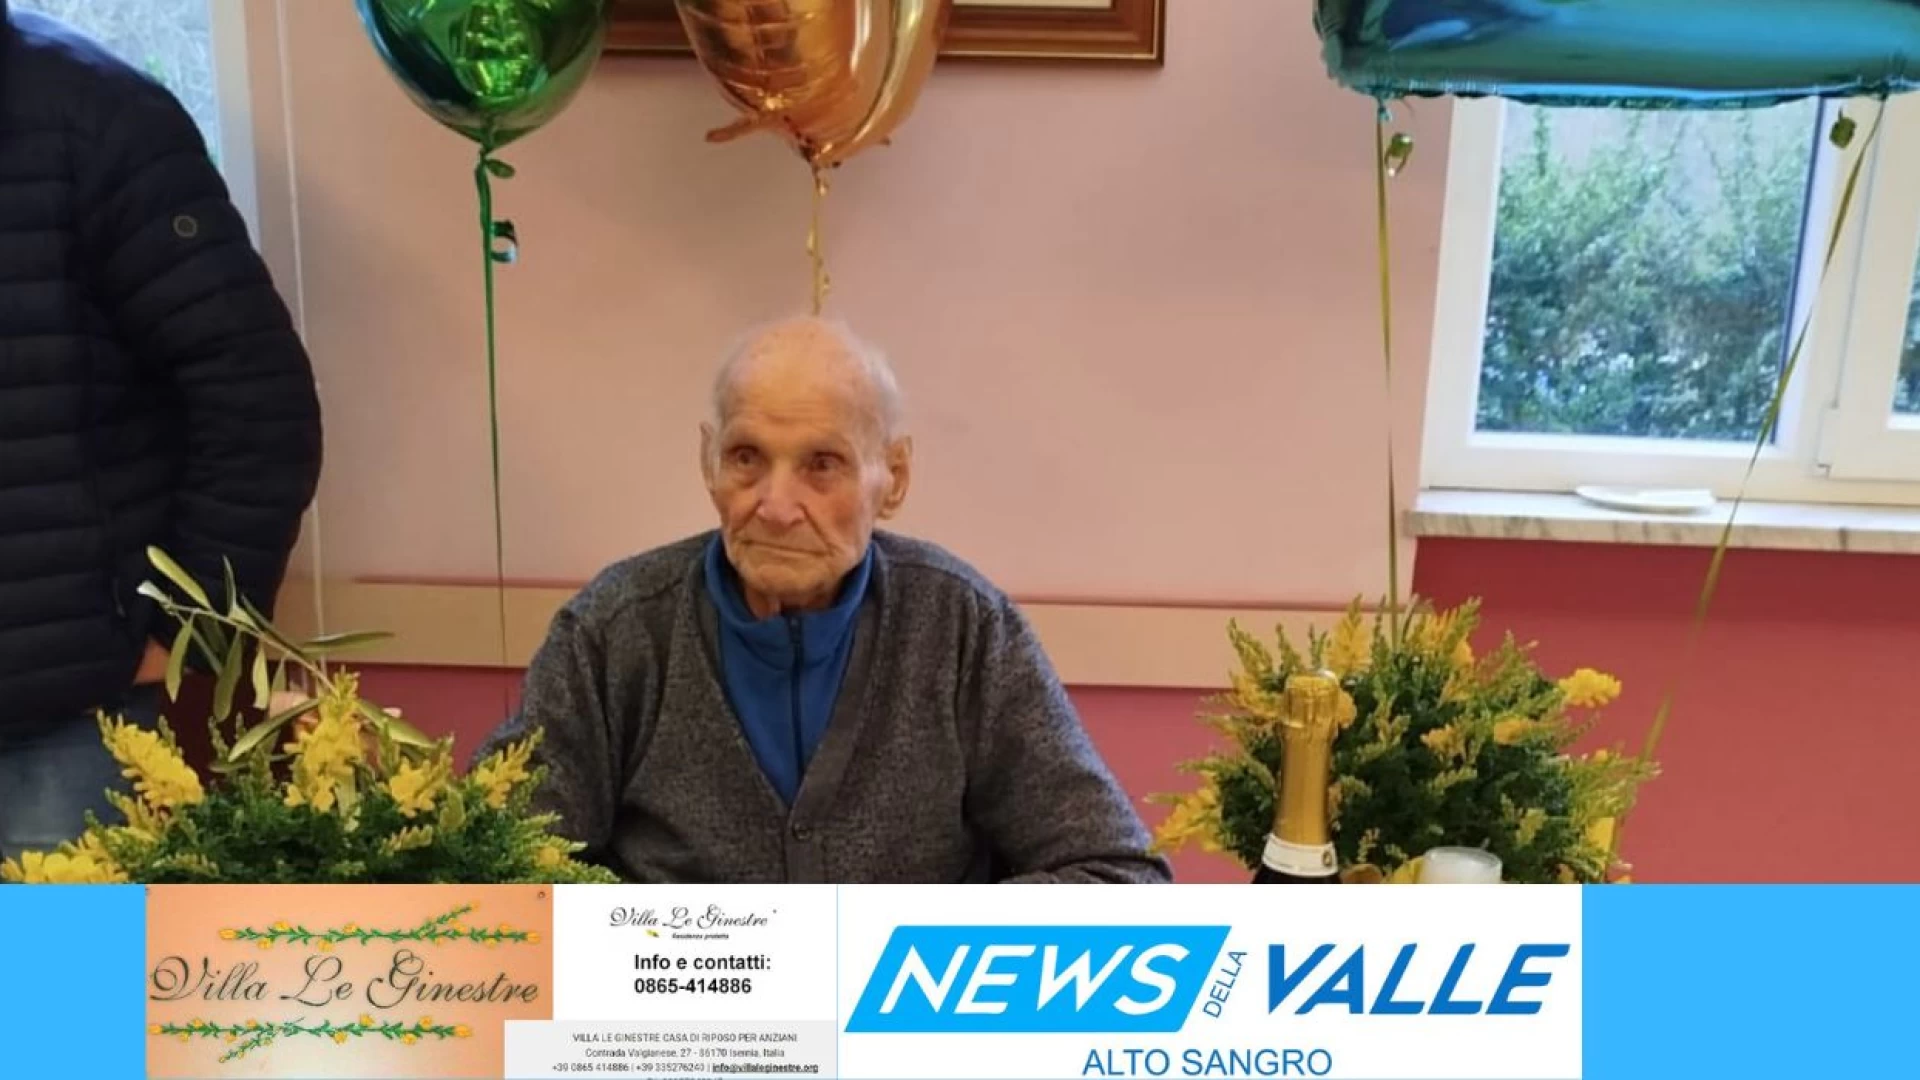 Florindo Matticoli ha festeggiato 102 anni. Ieri pomeriggio la festa a “Villa Le Ginestre”. Il suo ricordo della Guerra e di Mussolini. Guarda il servizio.